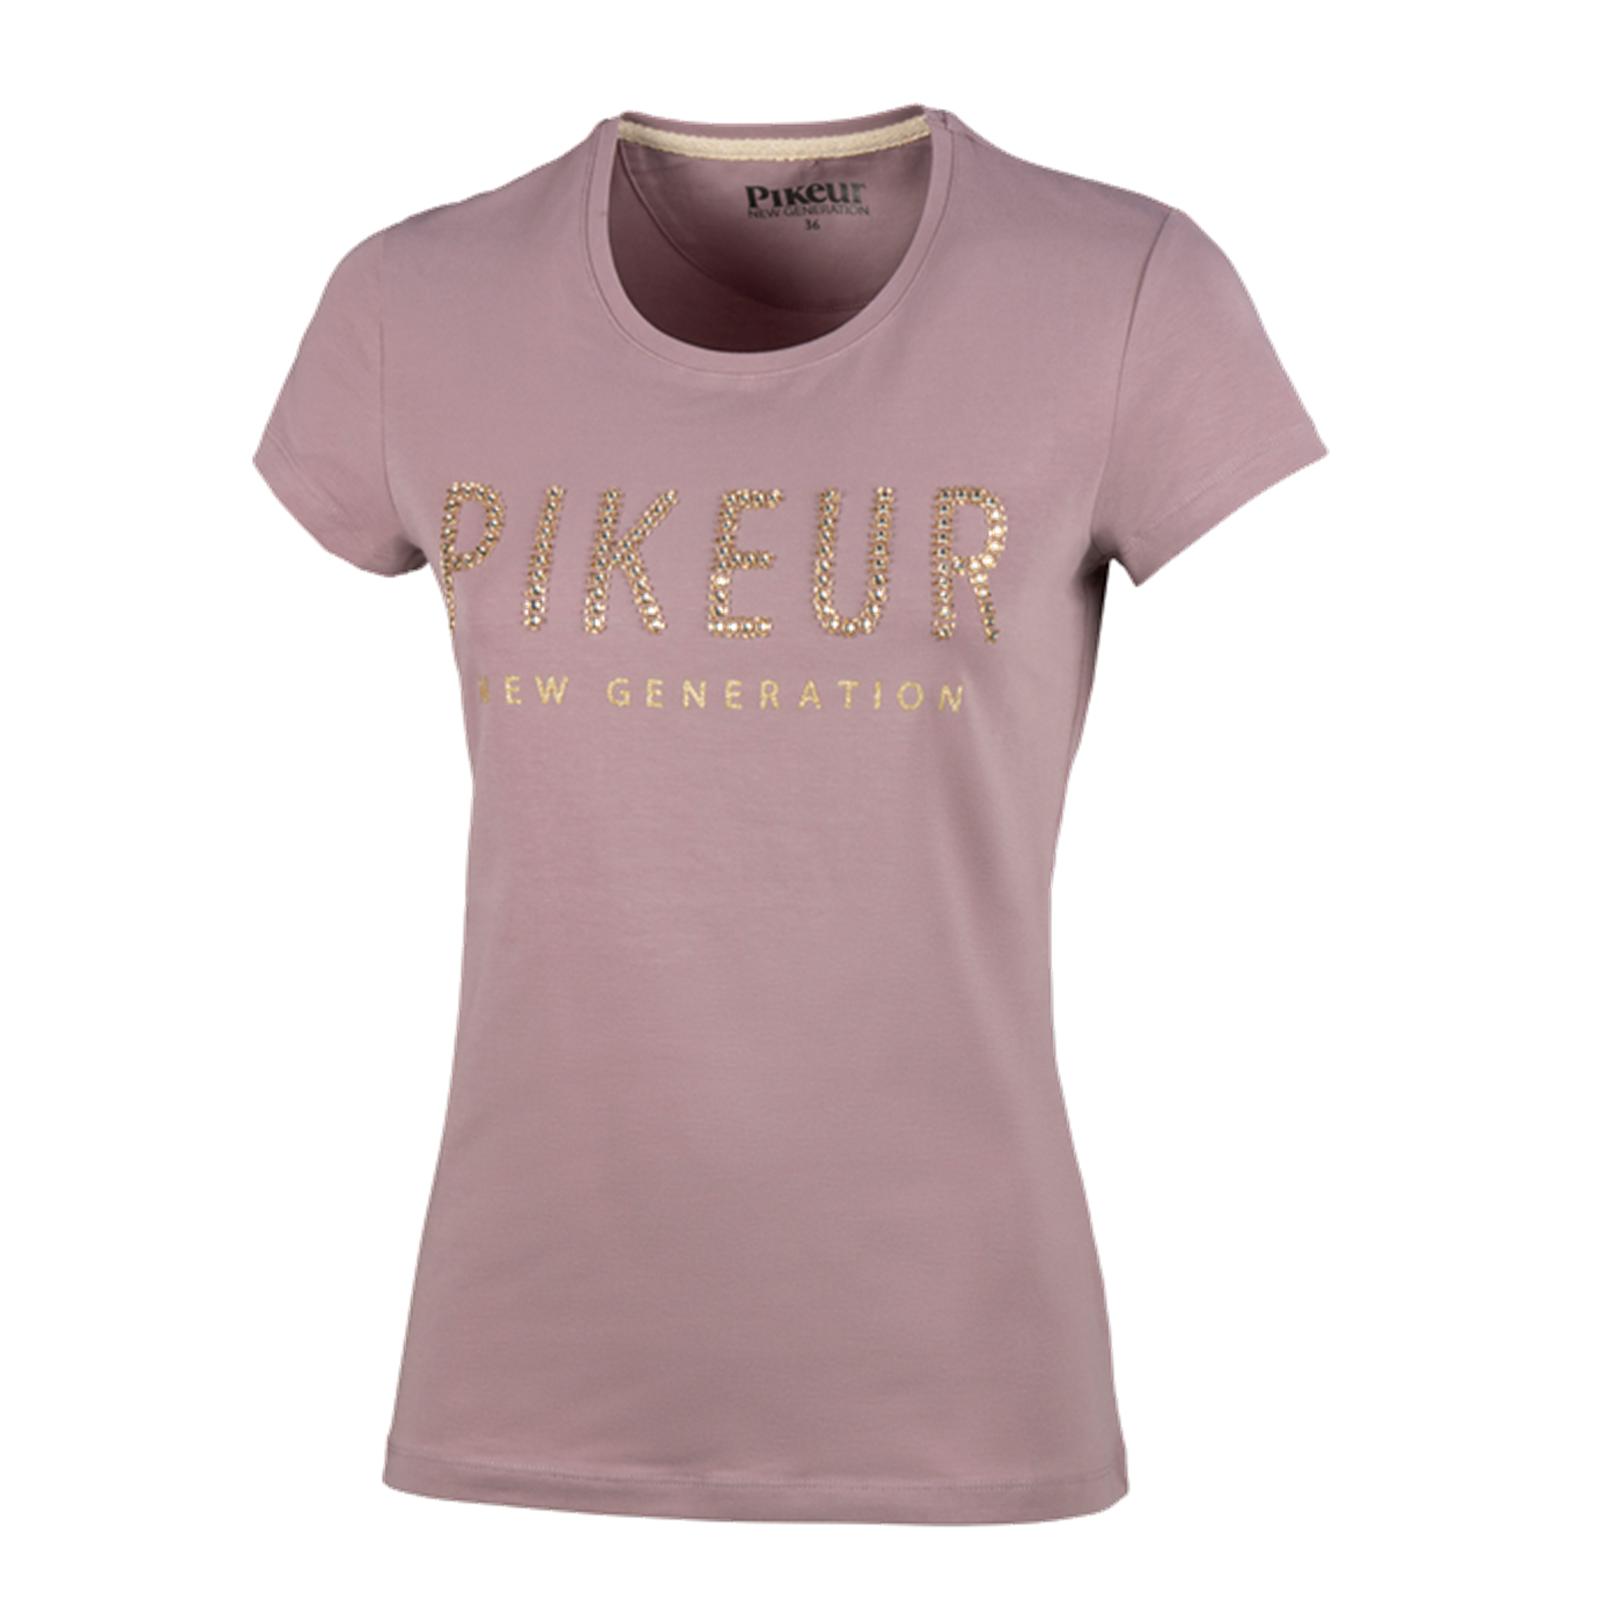 T-Shirt " PK_JOAN " Pikeur Damen Rundhals Shirt 